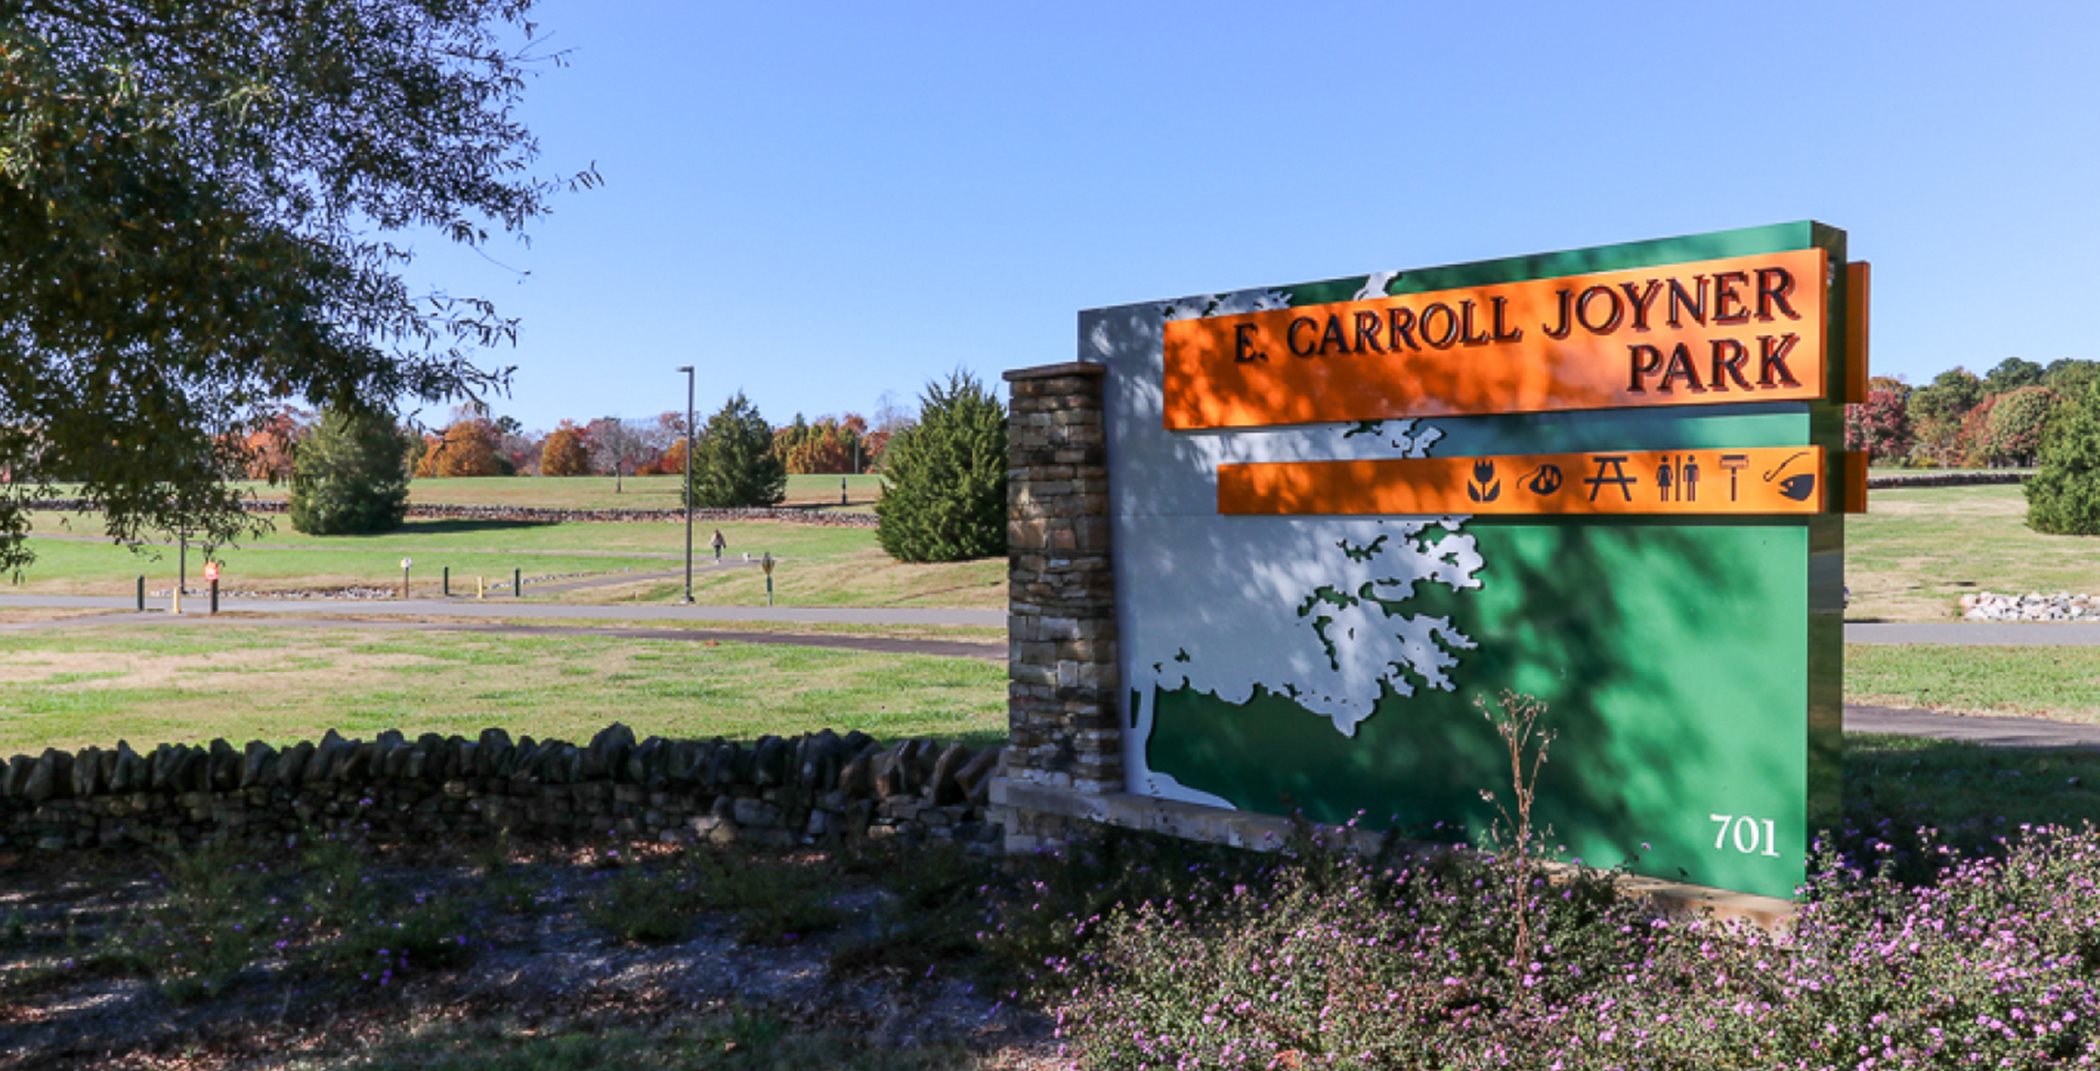 Carroll Joyner Park